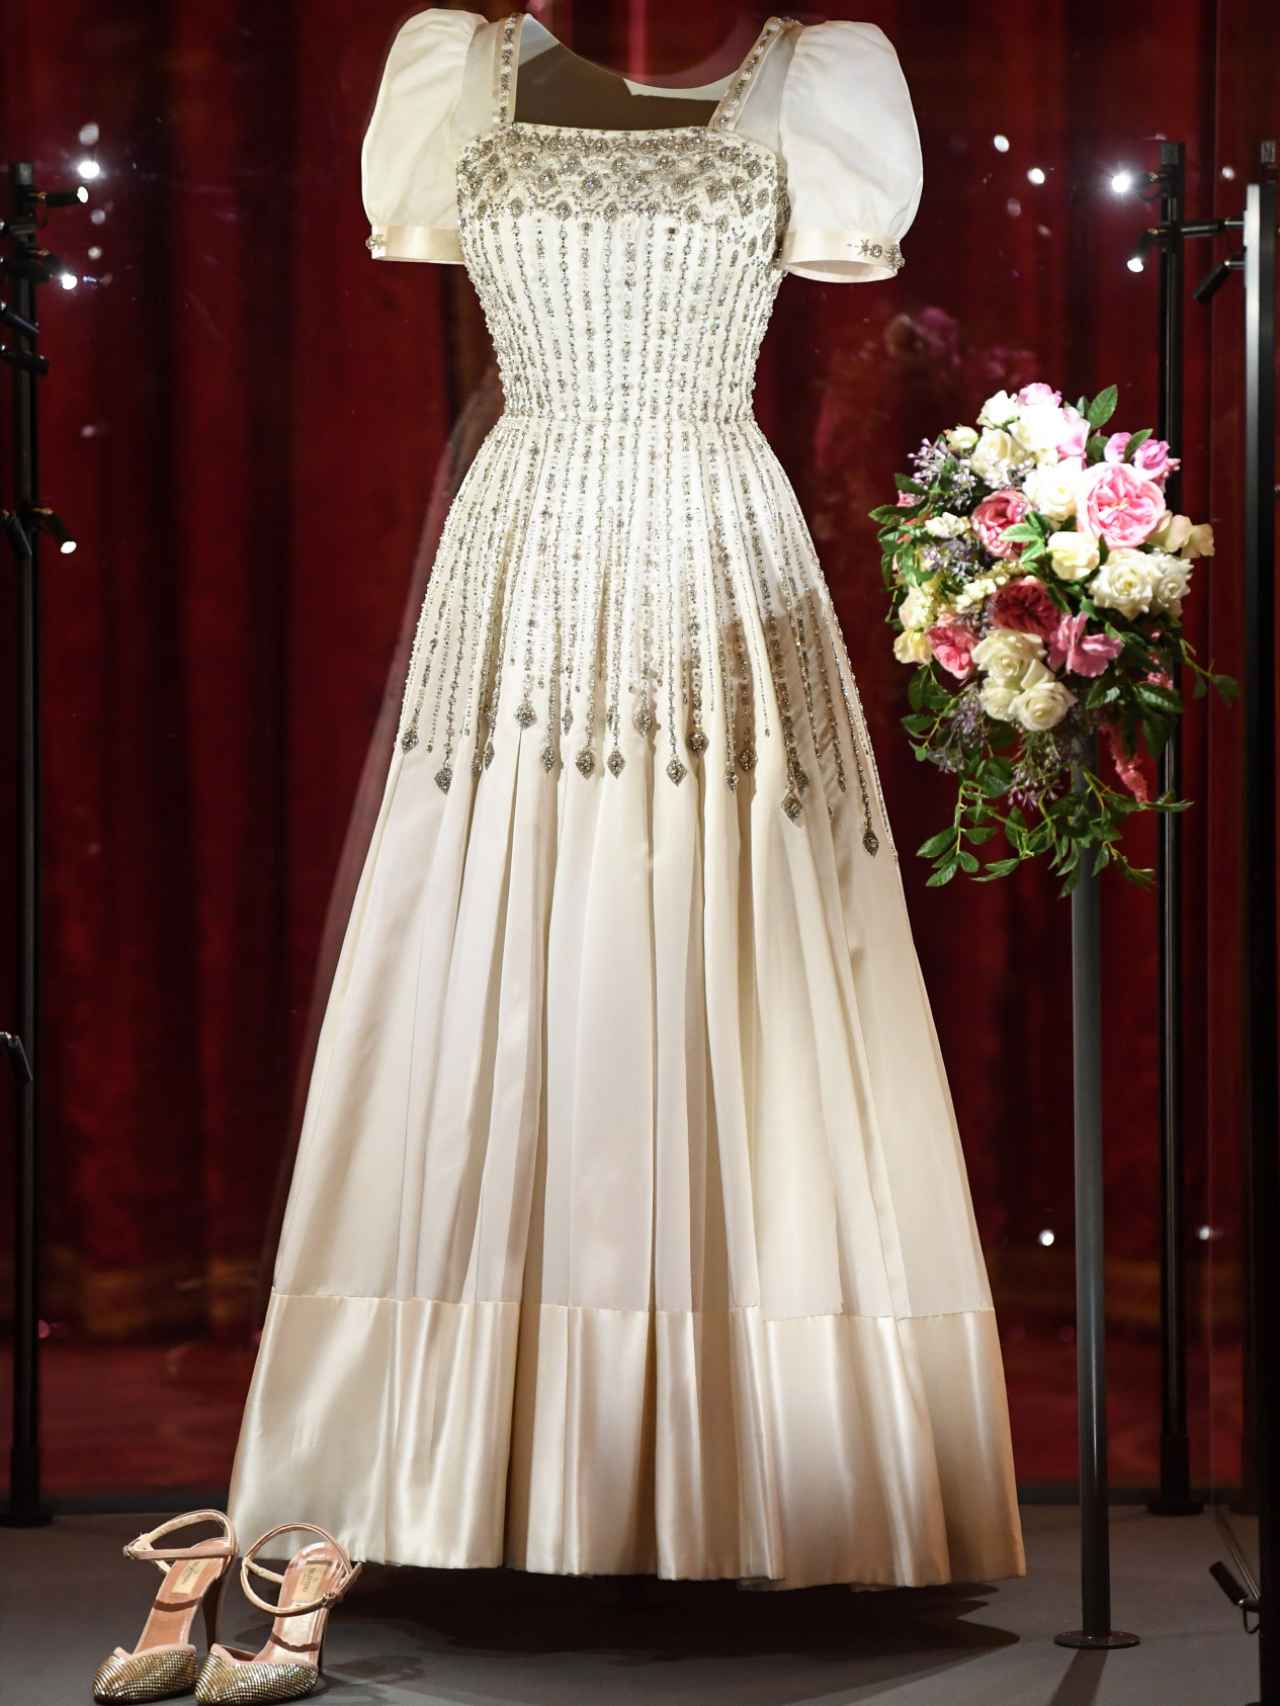 El vestido de novia de Beatriz de York expuesto en el Castillo de Windsor.